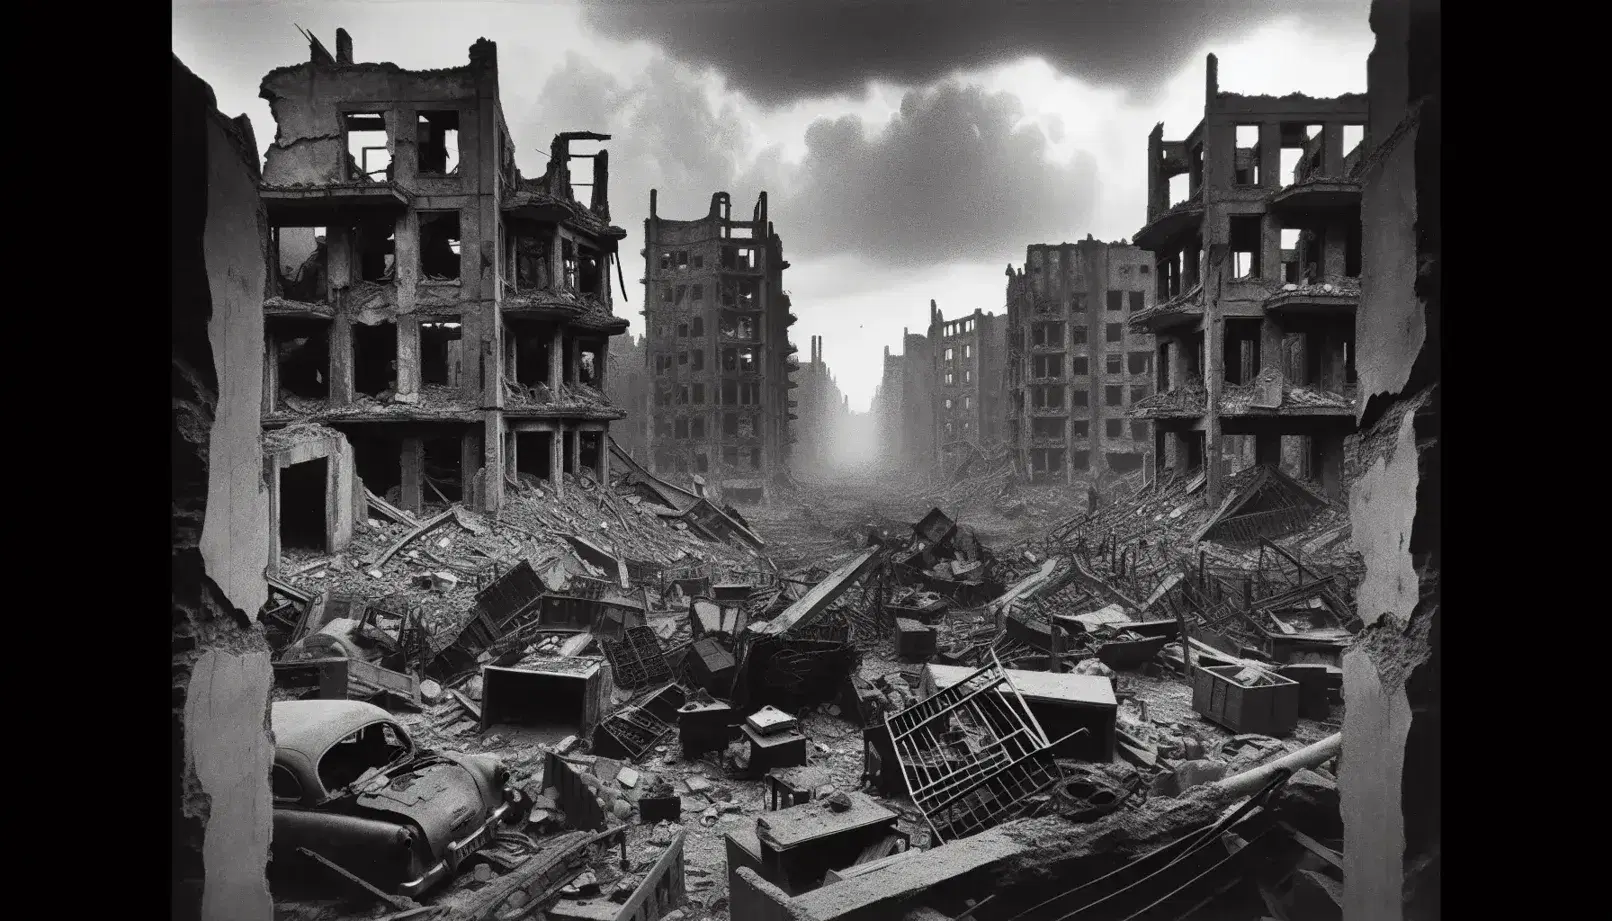 Paisaje urbano devastado por la guerra con edificios derrumbados, escombros y humo en el cielo nublado, transmitiendo desolación.